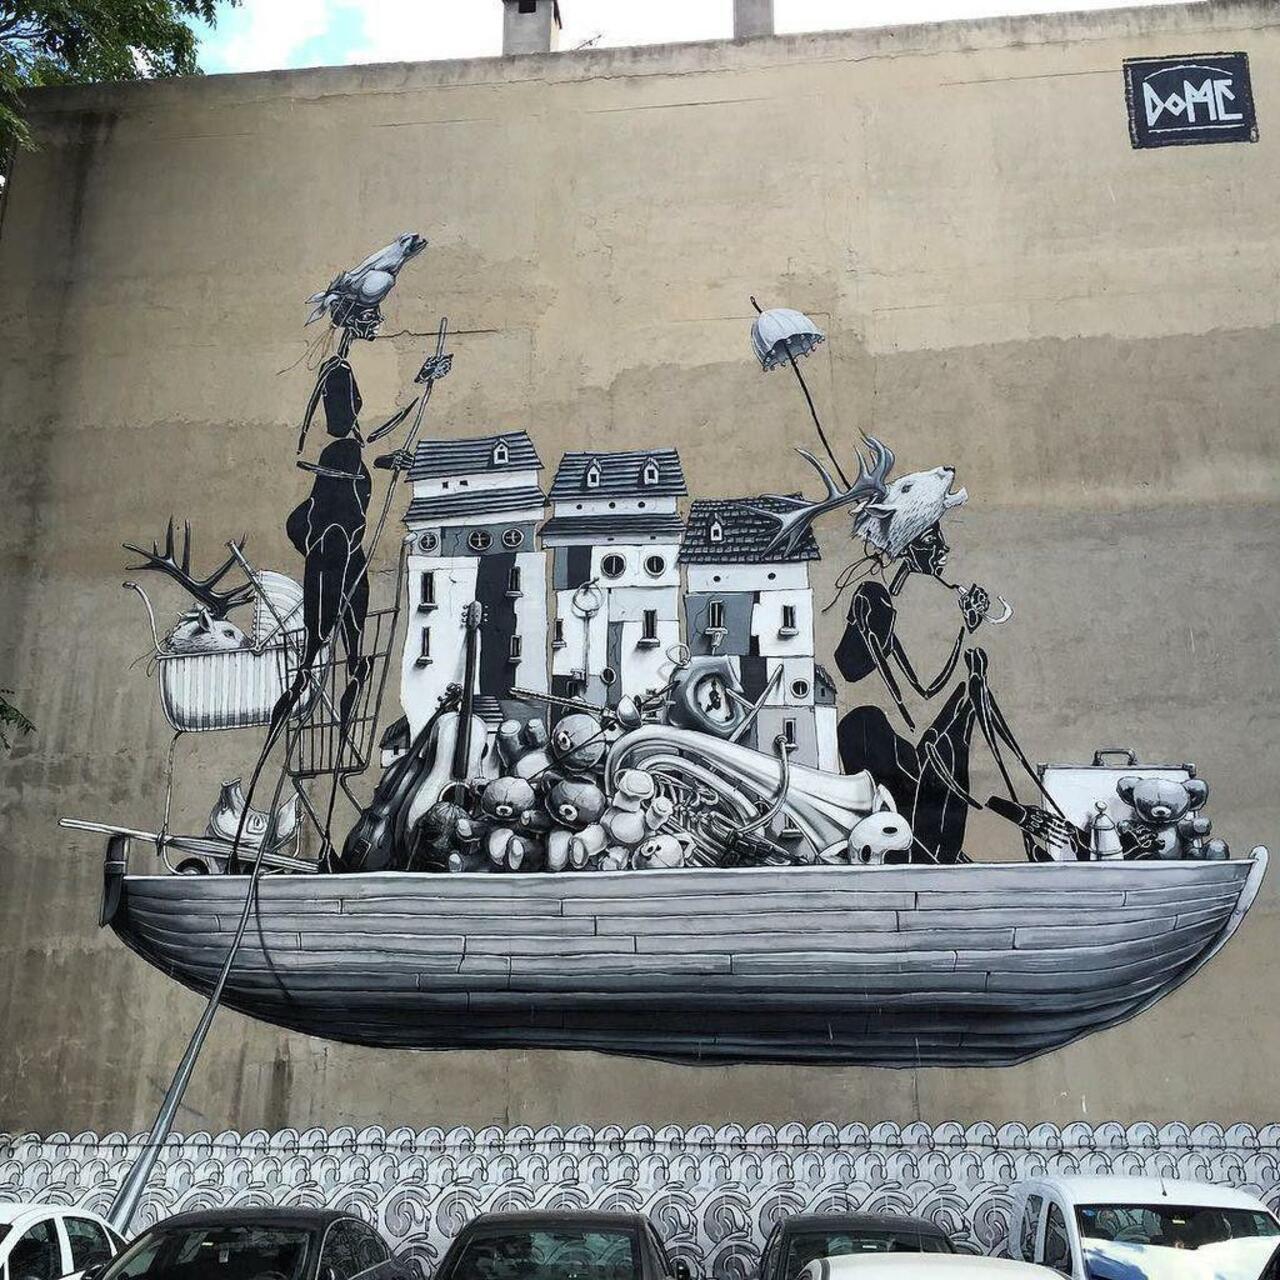 RT @StArtEverywhere: Street Art Mural
Dome
Kadikoy, Istanbul
#graff #graffiti #graffitiistanbul #graffitikatakon #graffitidubrovnik #gra… http://t.co/UVbPmc3ehY